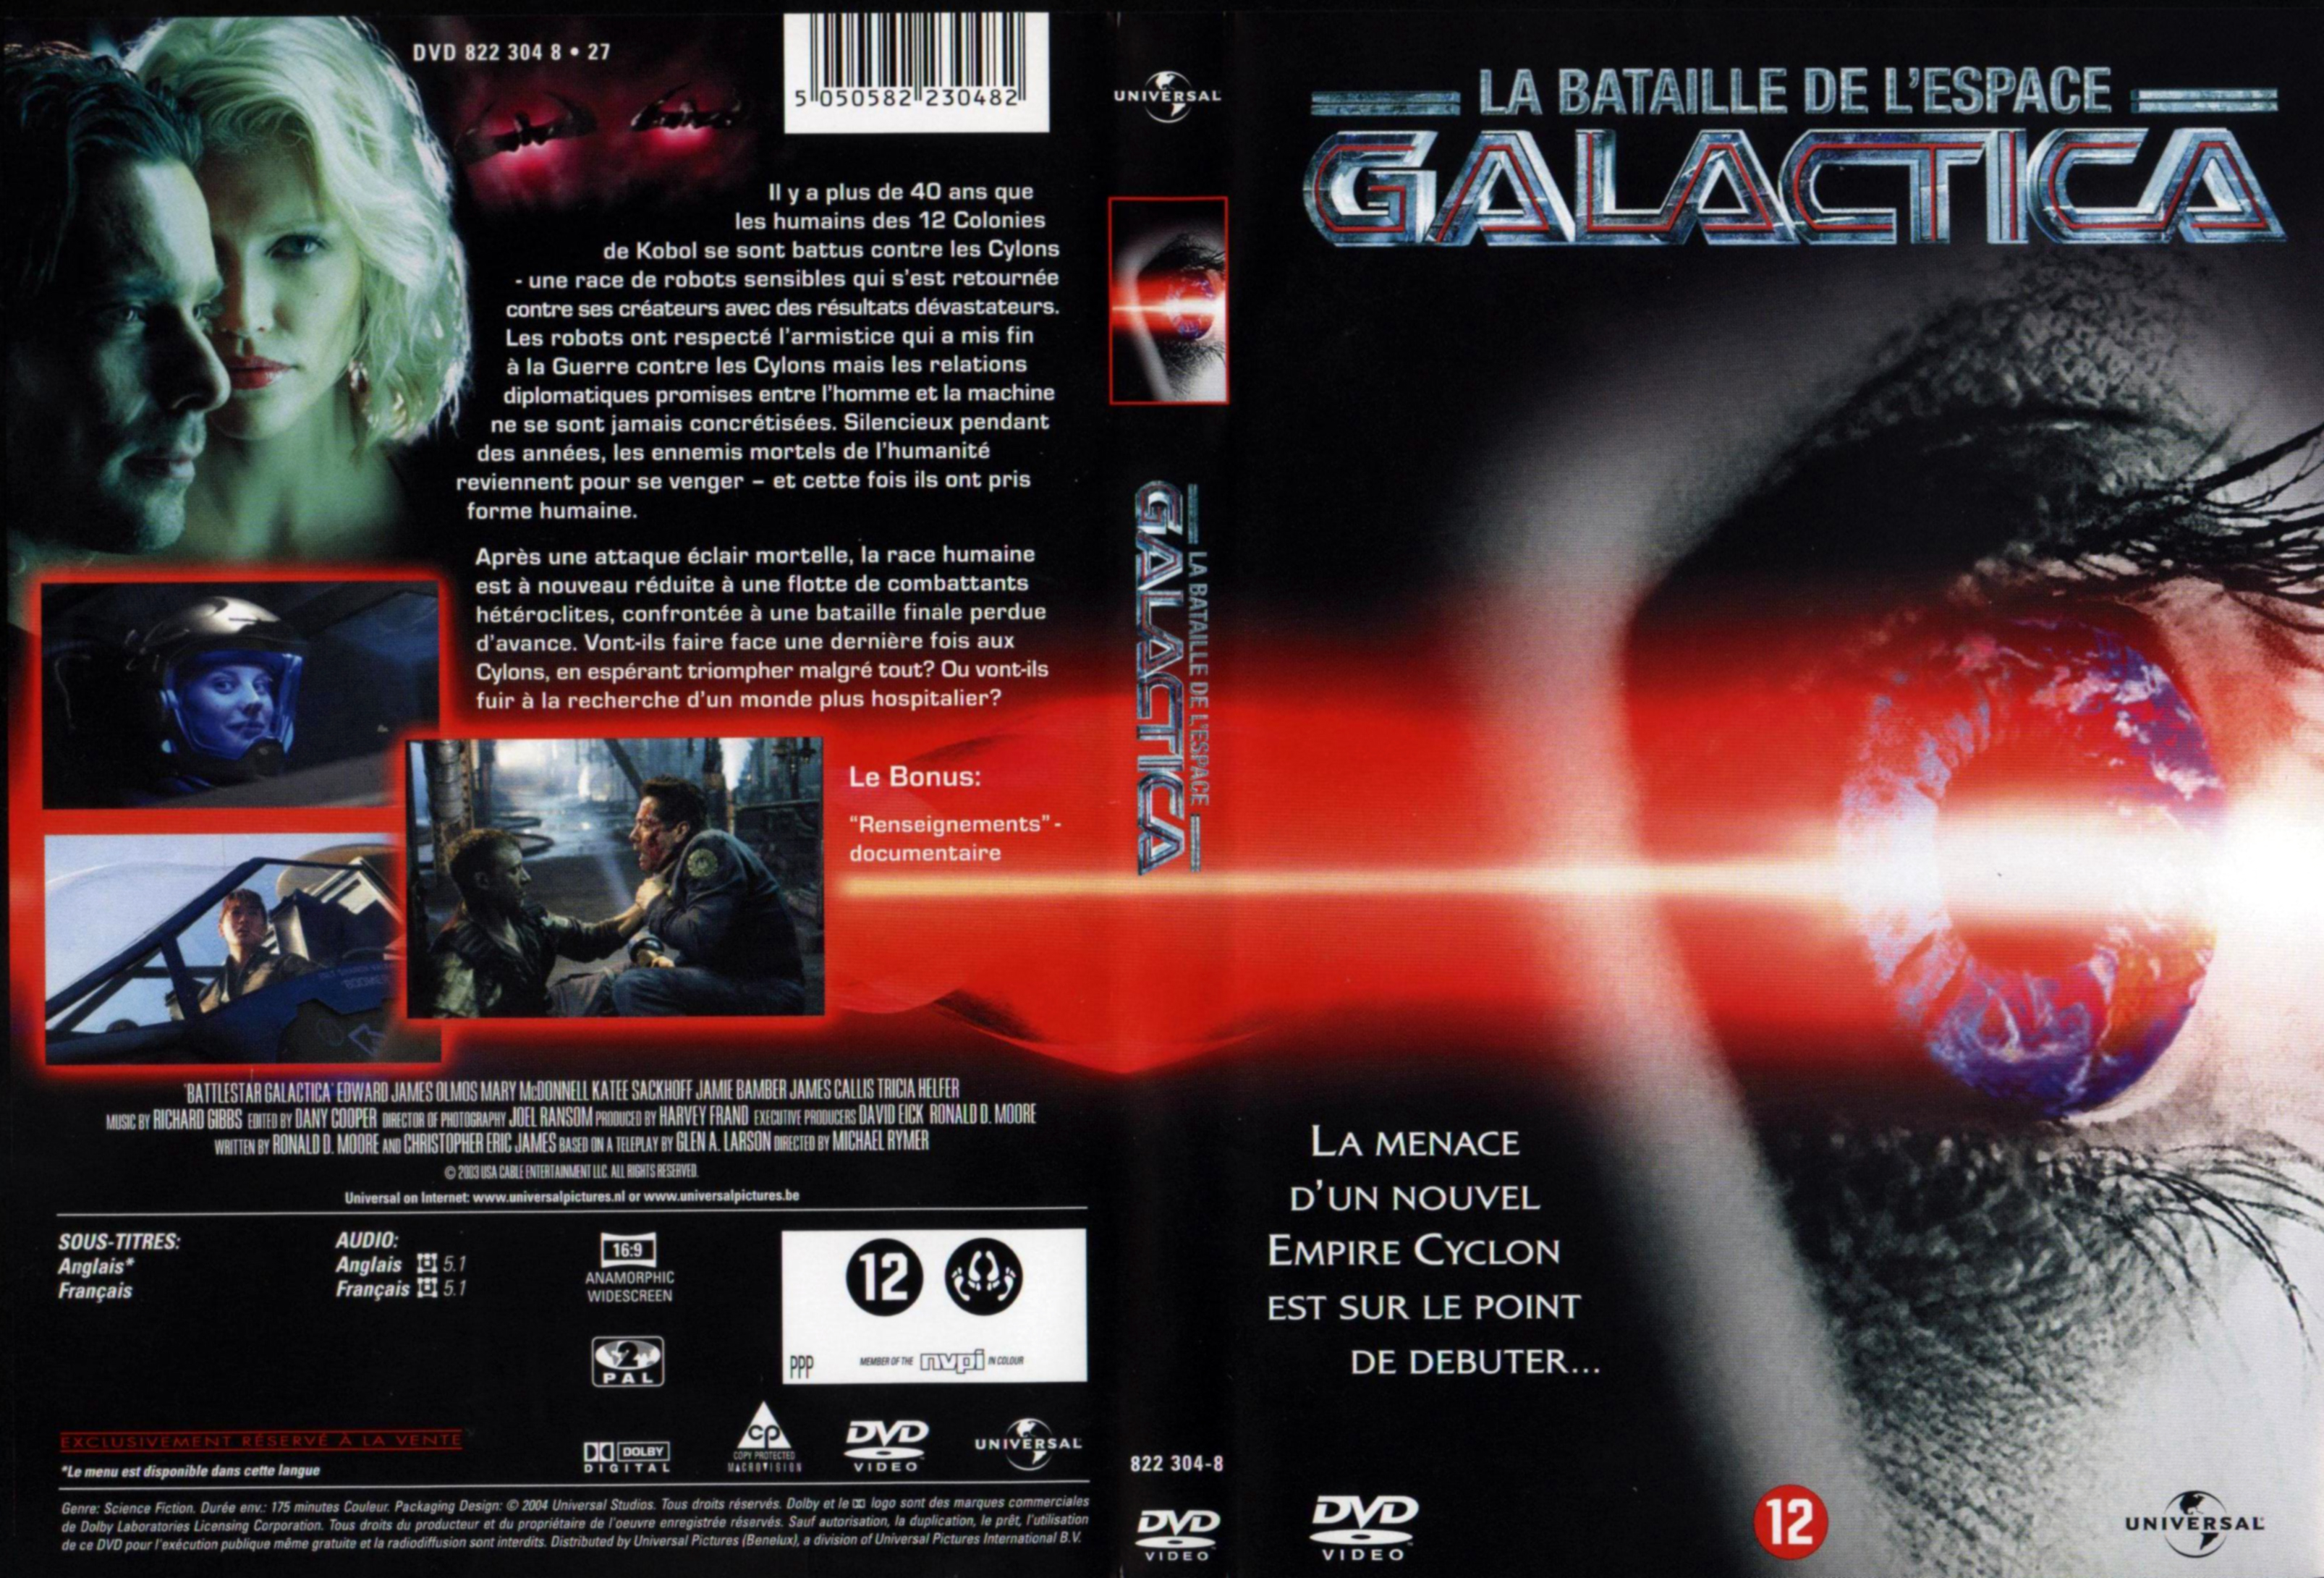 Jaquette DVD Battlestar Galactica v2